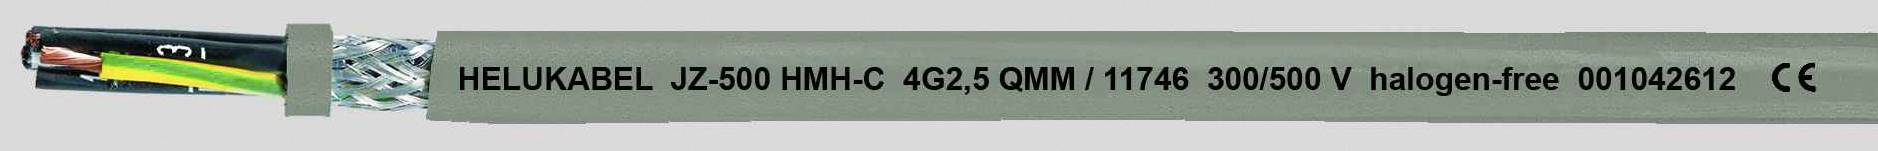 HELUKABEL JZ-500 HMH-C Steuerleitung 3 G 0.75 mm² Grau 11679-1000 1000 m